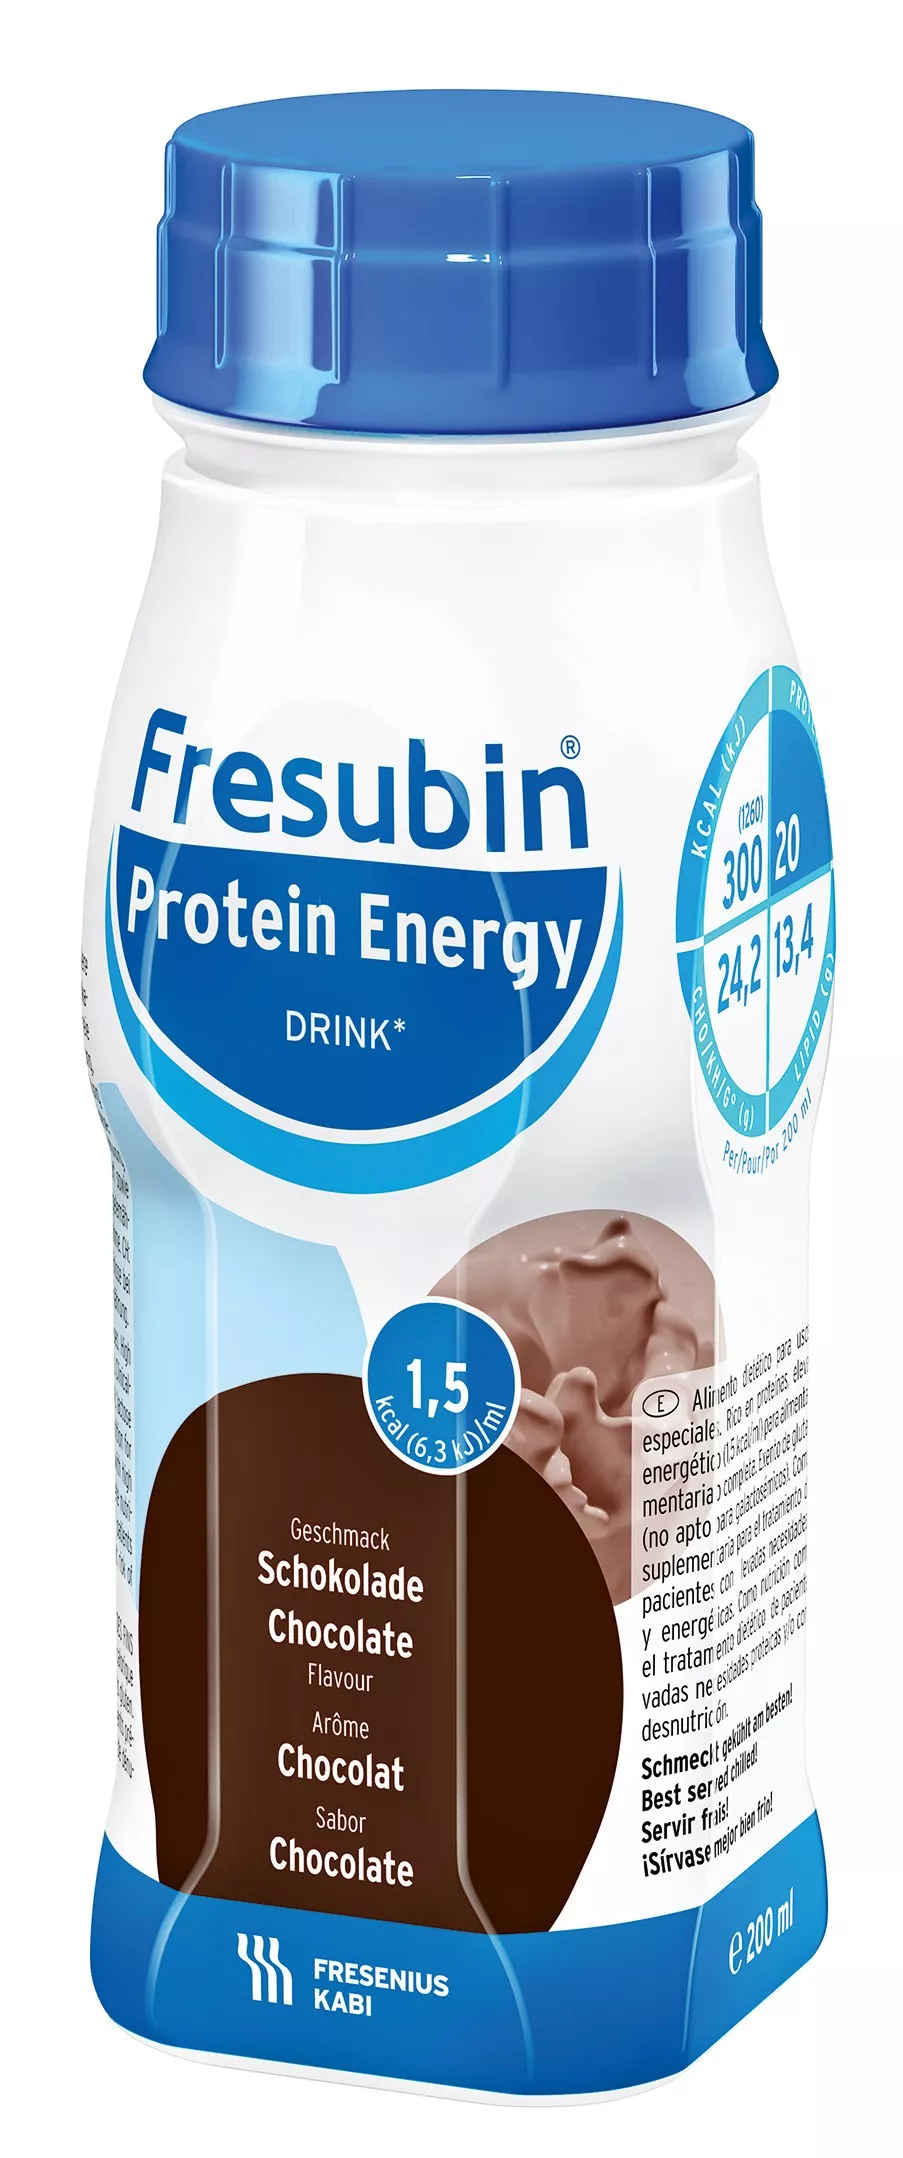 Bautura Fresubin Protein Energy 1,5kcal cu aroma de ciocolata, 200ml, Fresenius Kabi, [],remediumfarm.ro